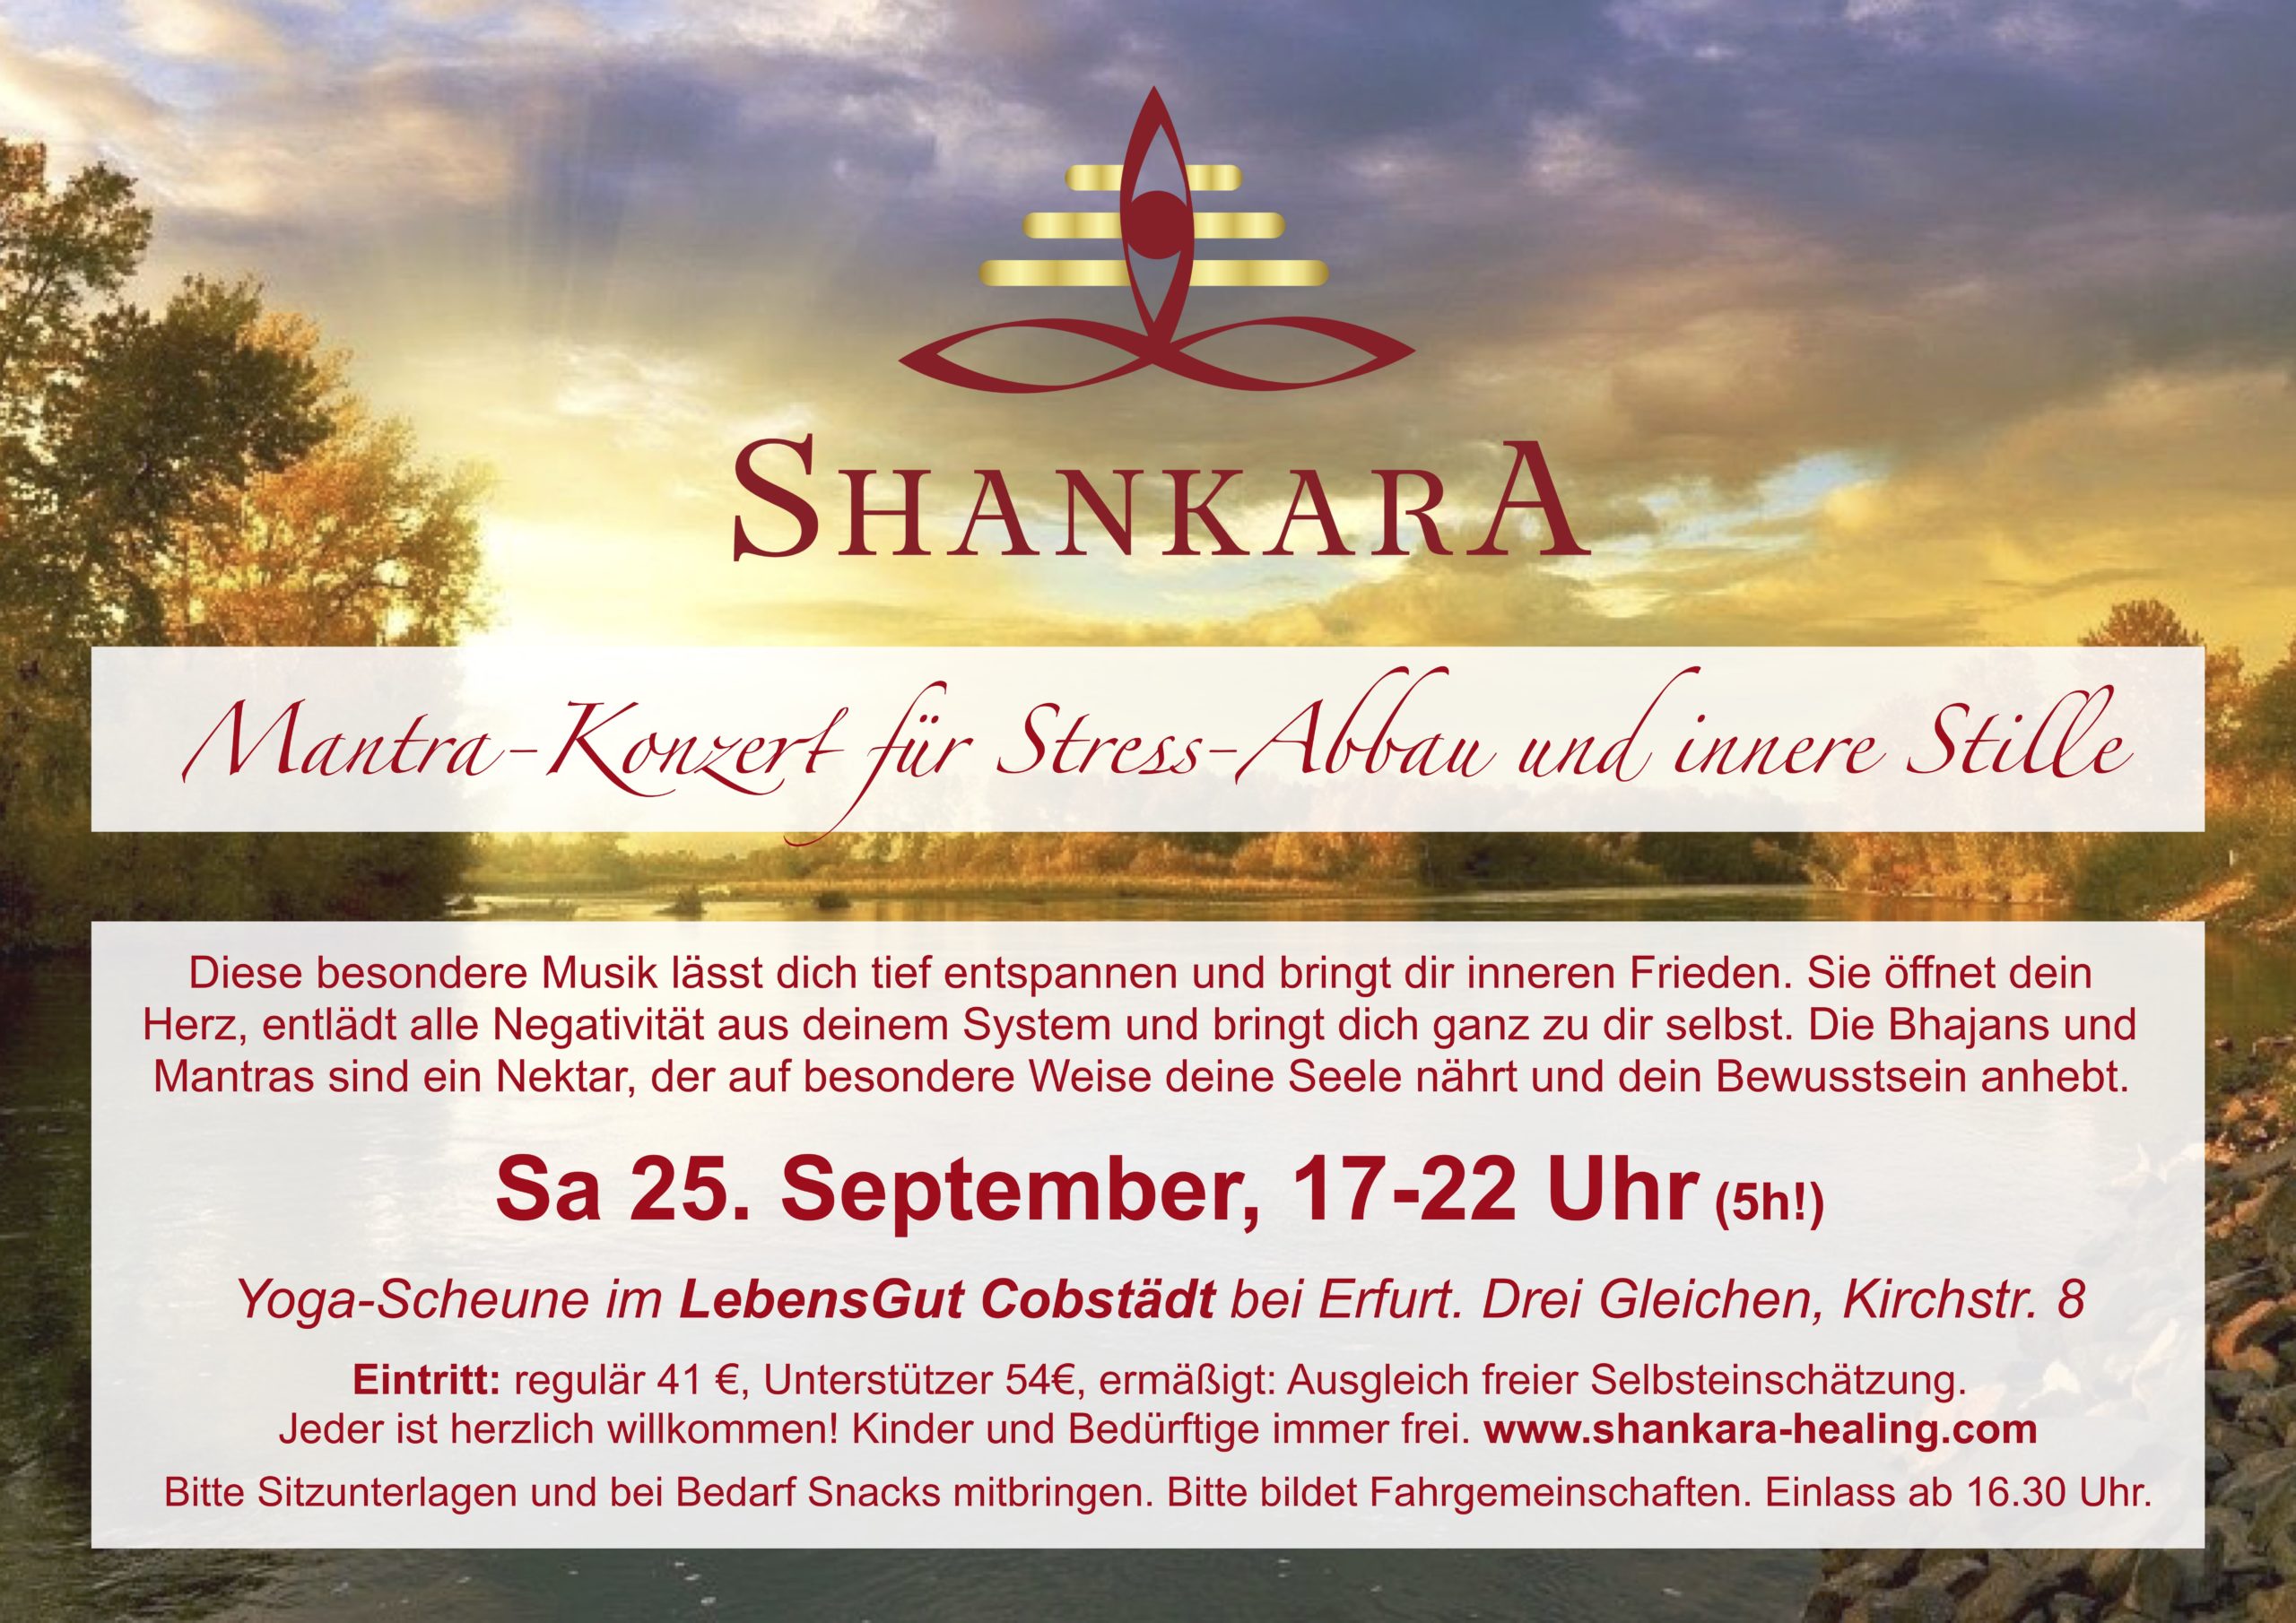 5h! Mantra-Konzert für  Stress-Abbau und innere Stille